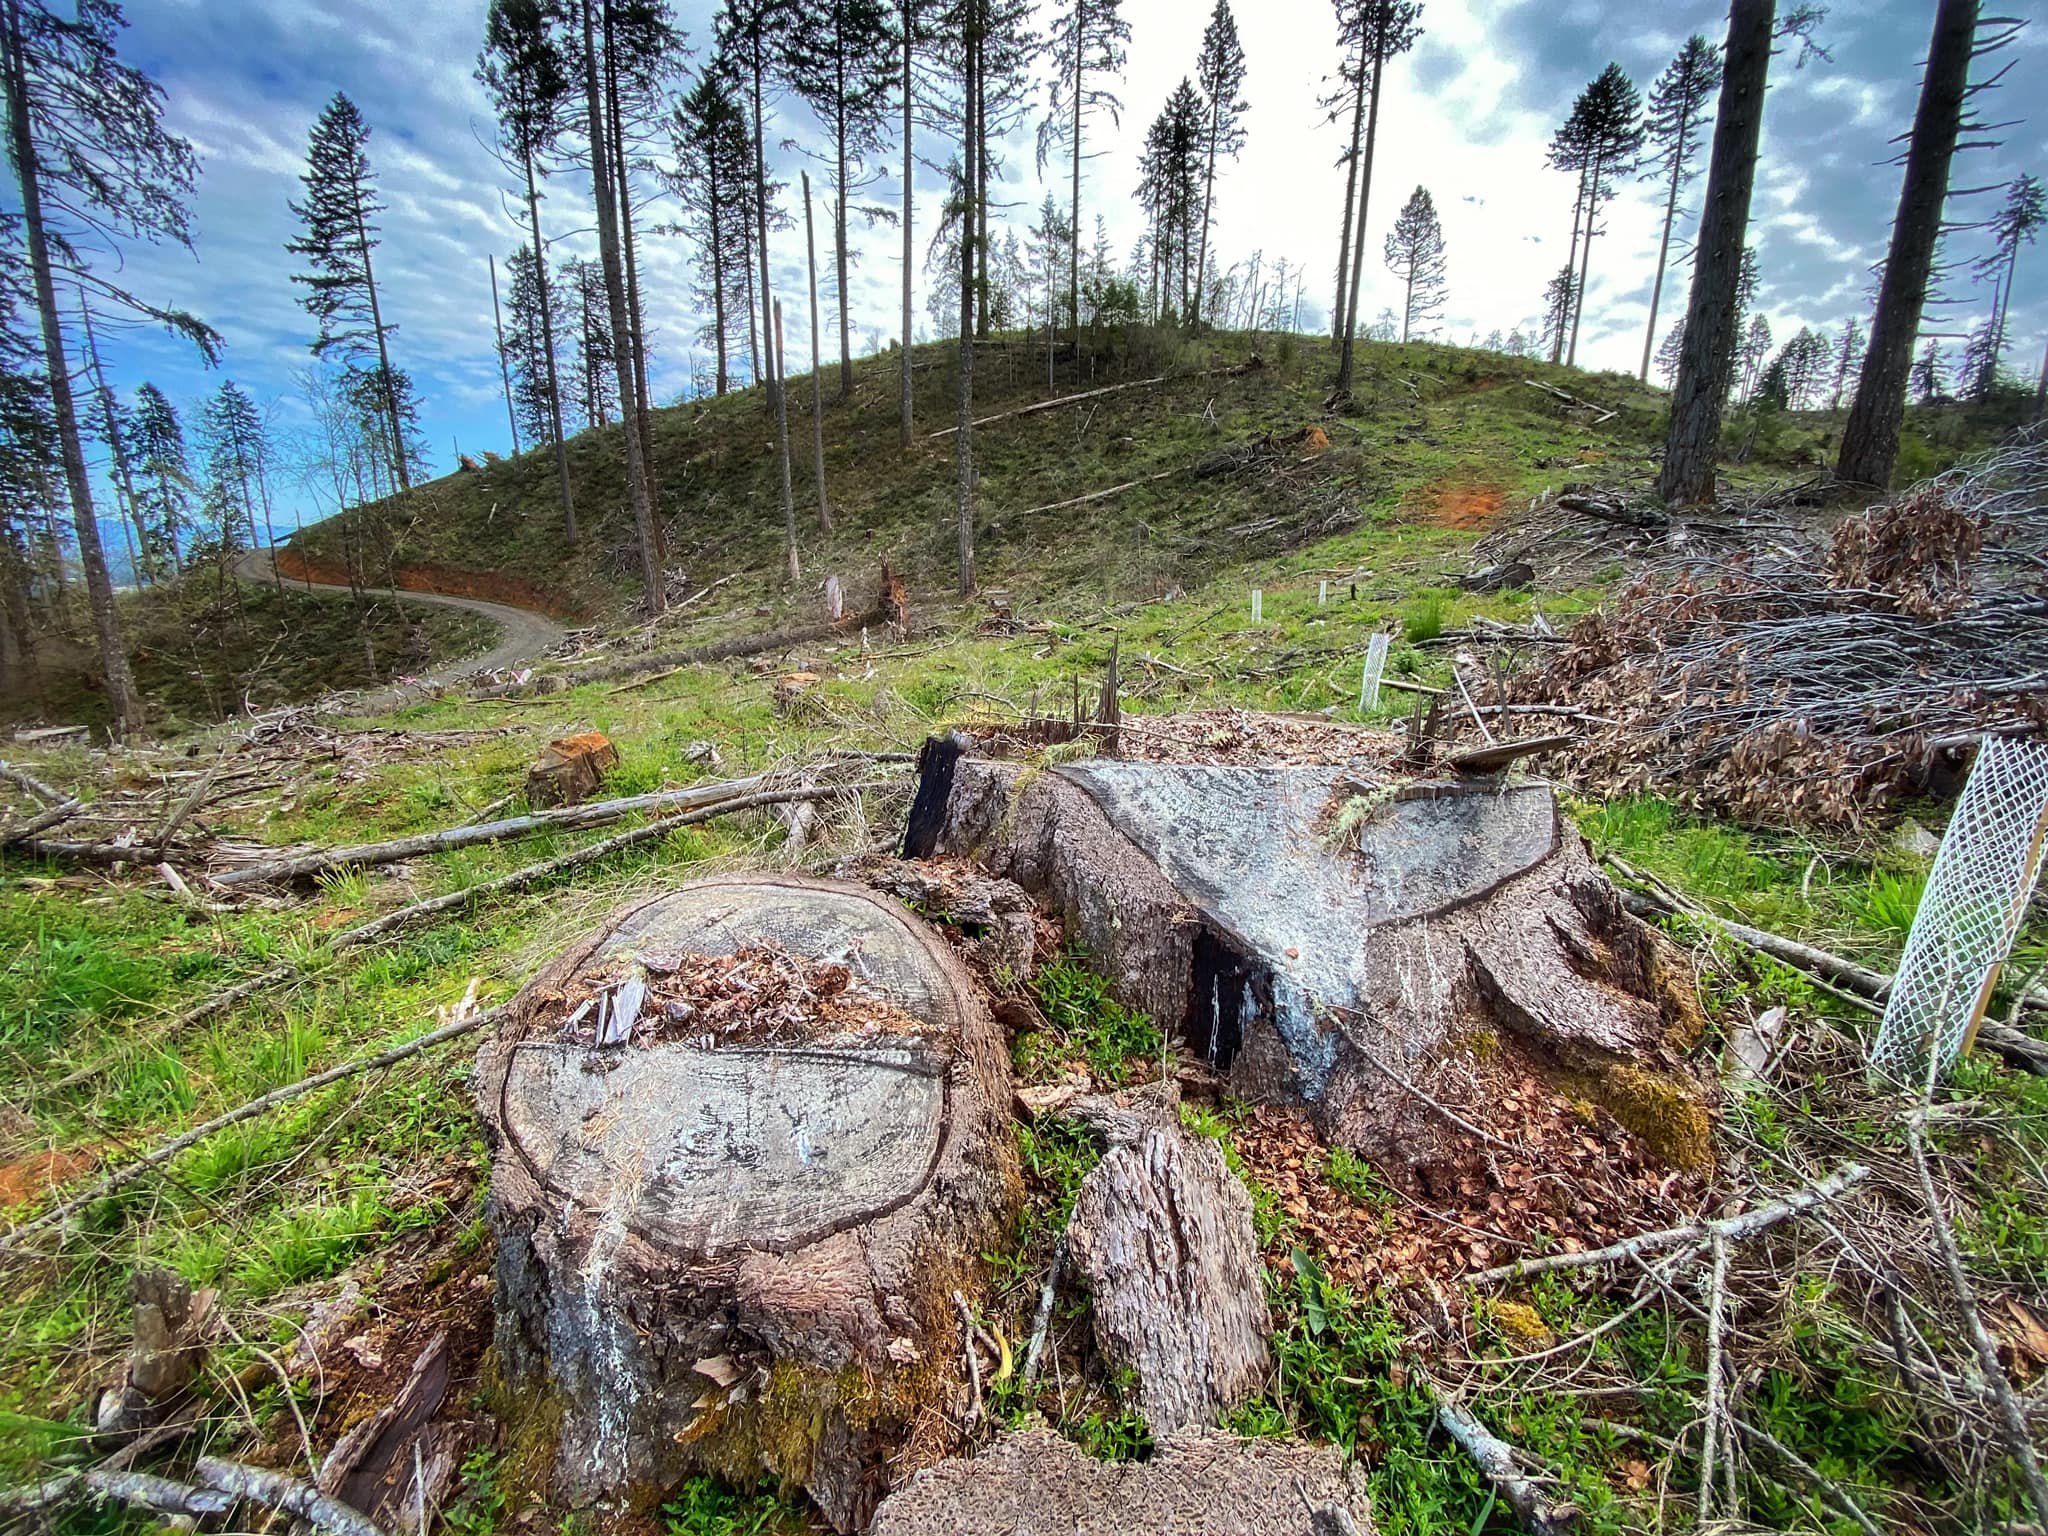 Nails Creek forest in Oregon after logging